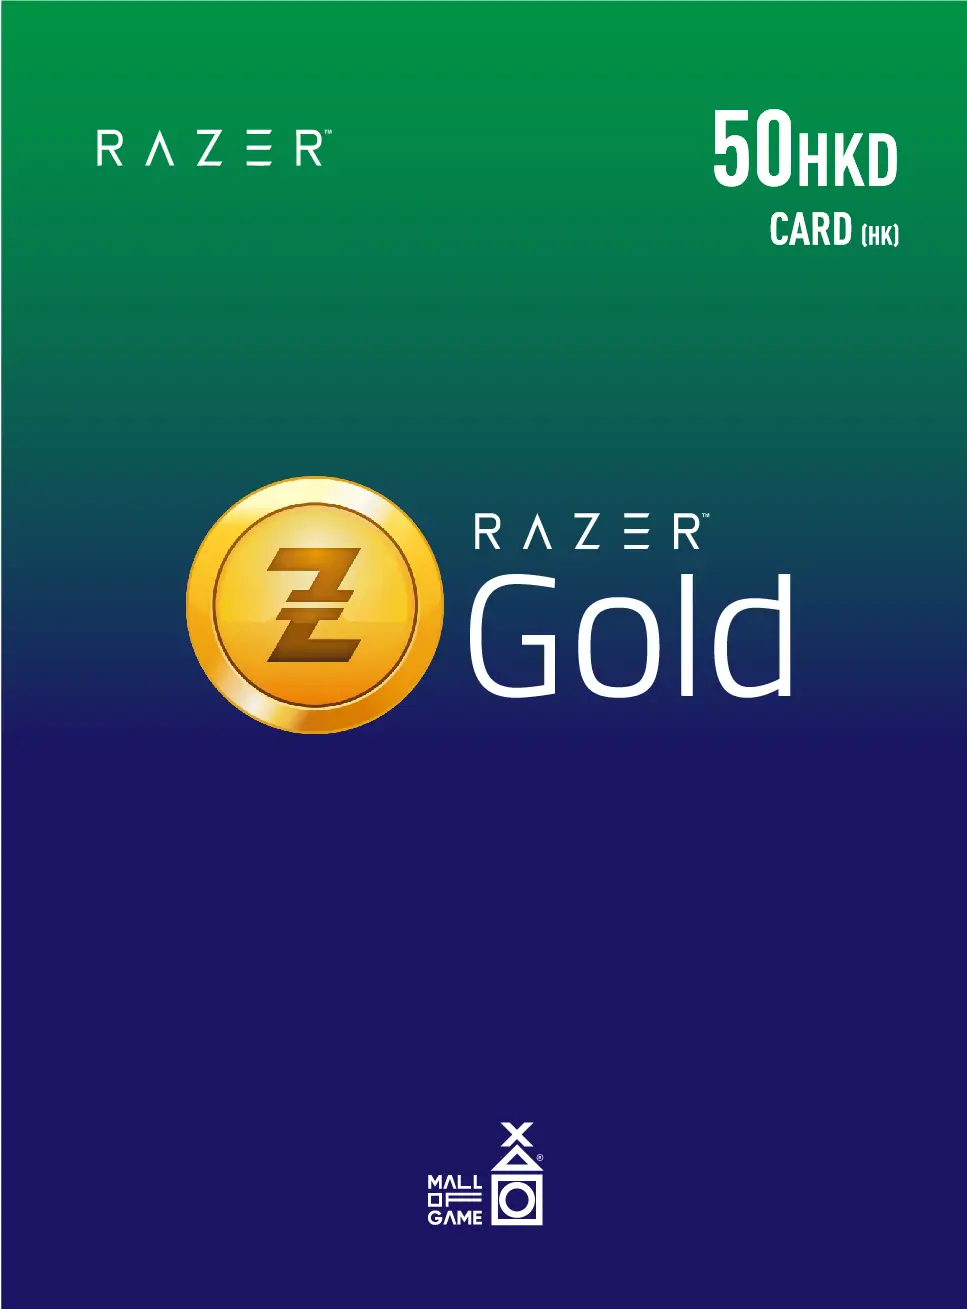 Razer Gold HKD50 (HK)